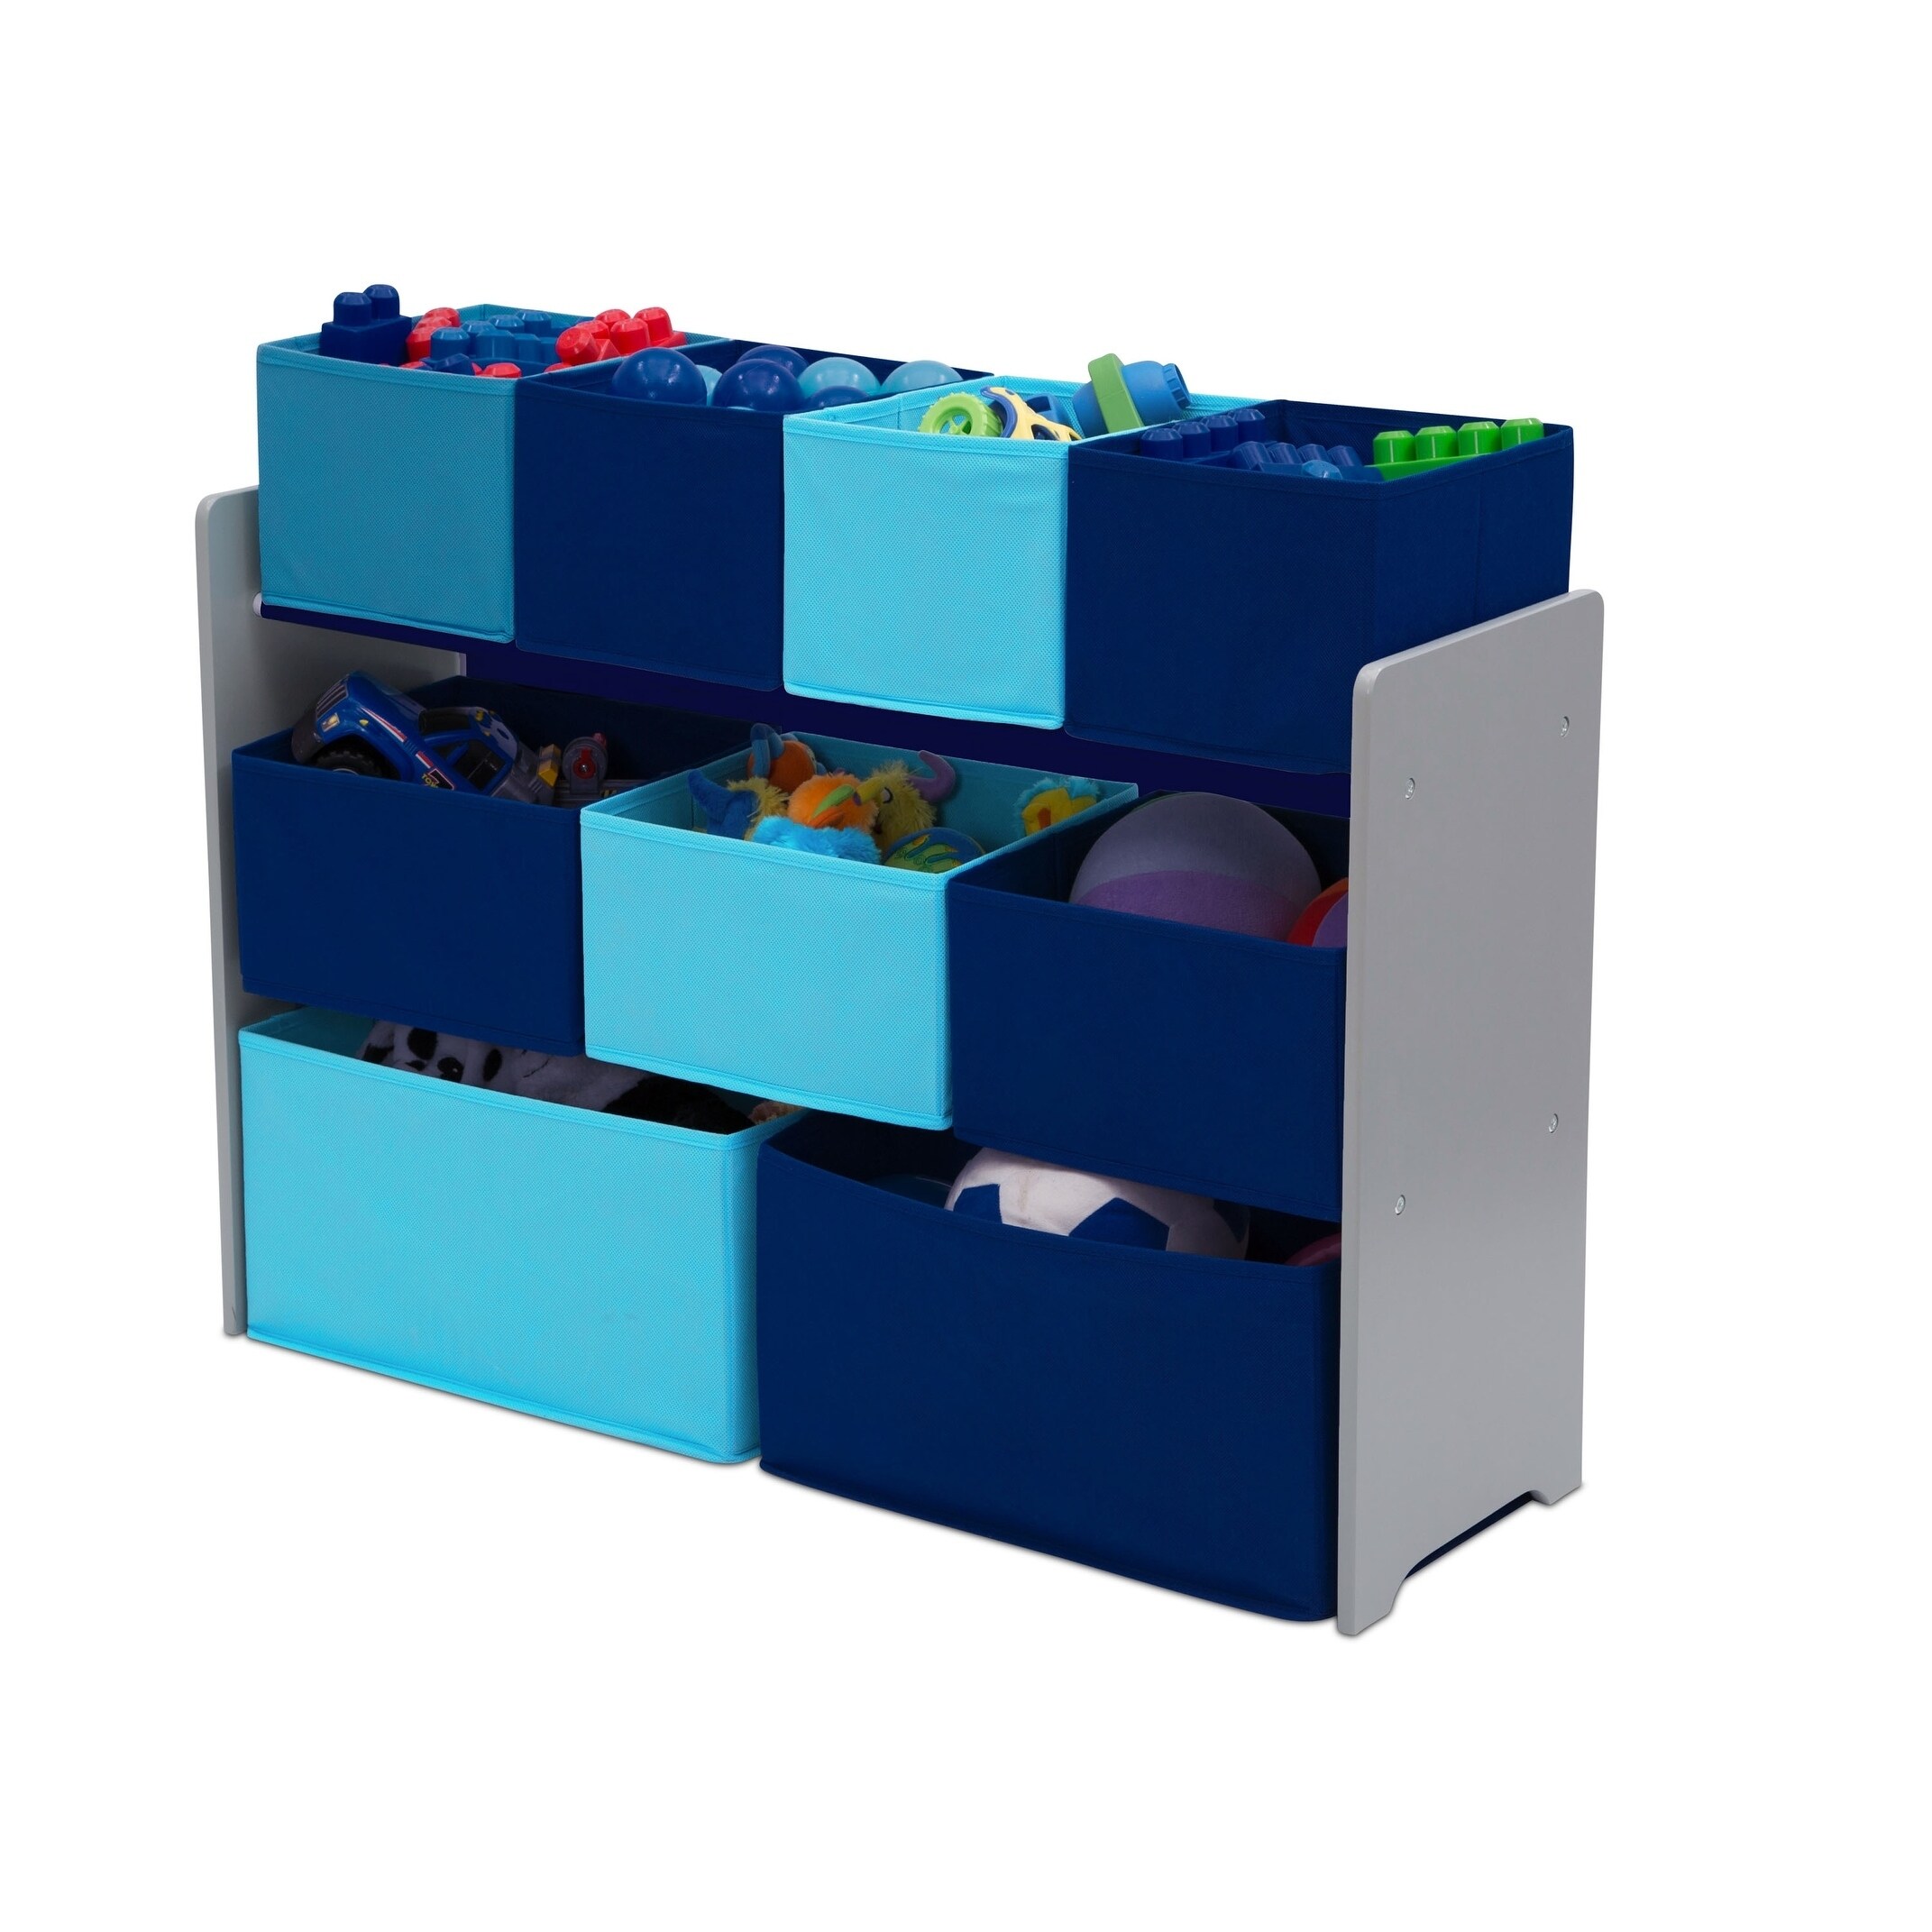 Delta Children Deluxe Multi Bin Toy Organizer with Storage Bins playroom chest 